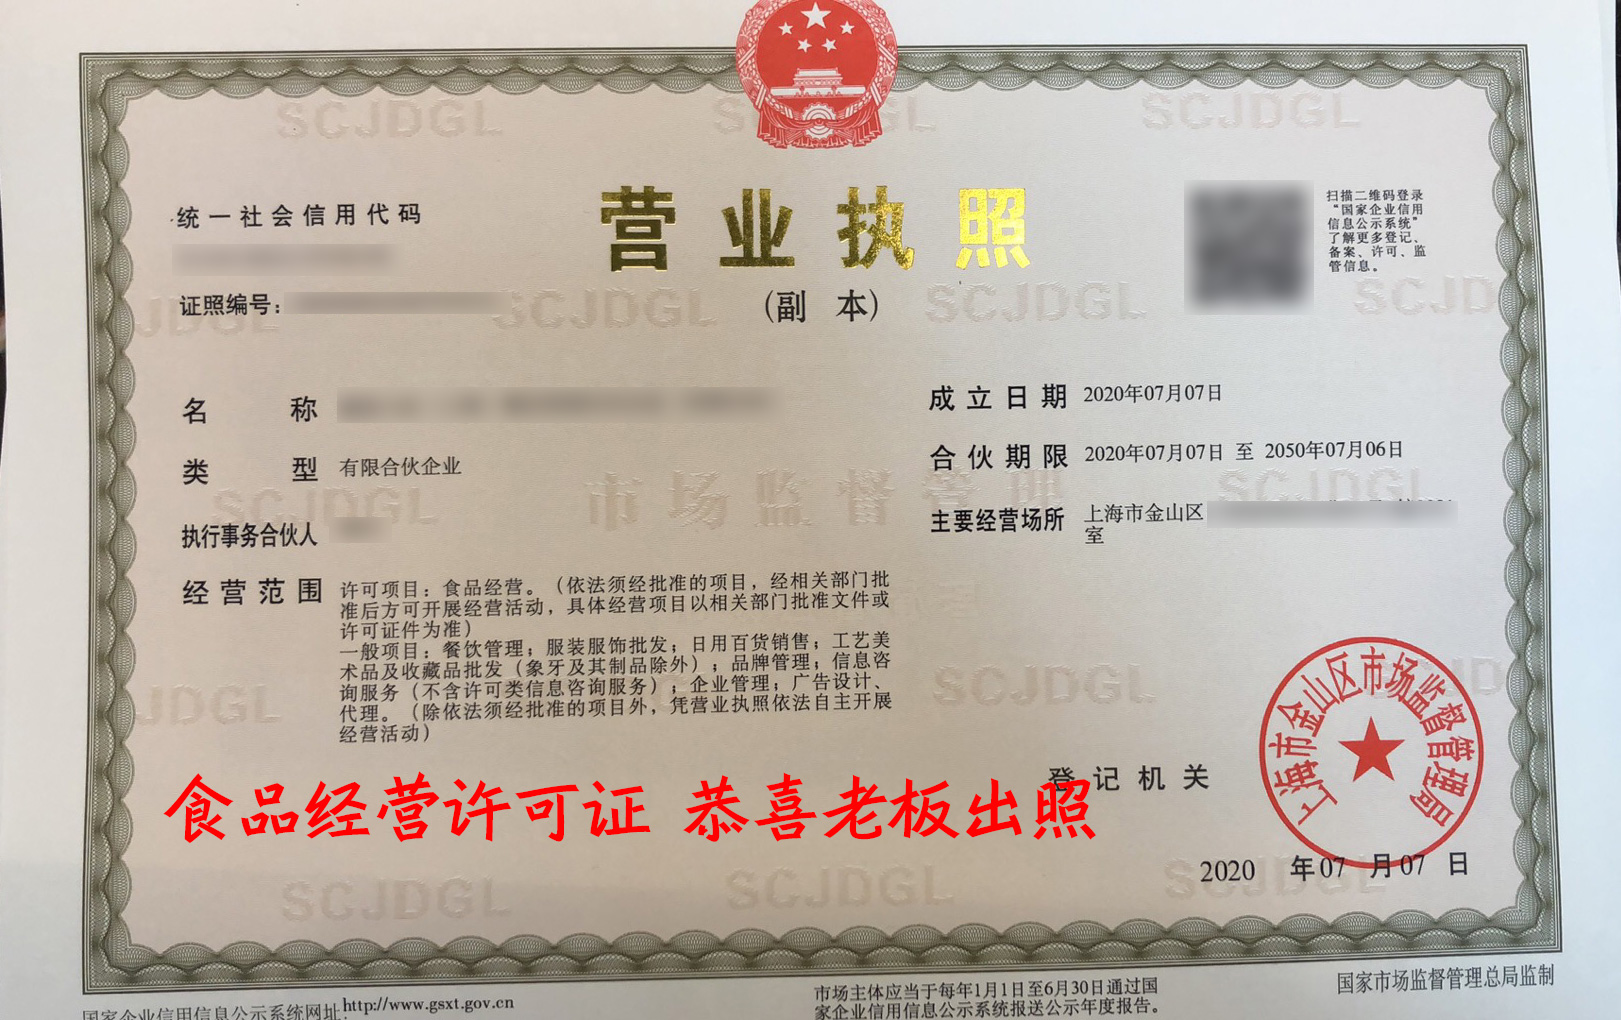 上海公司注册